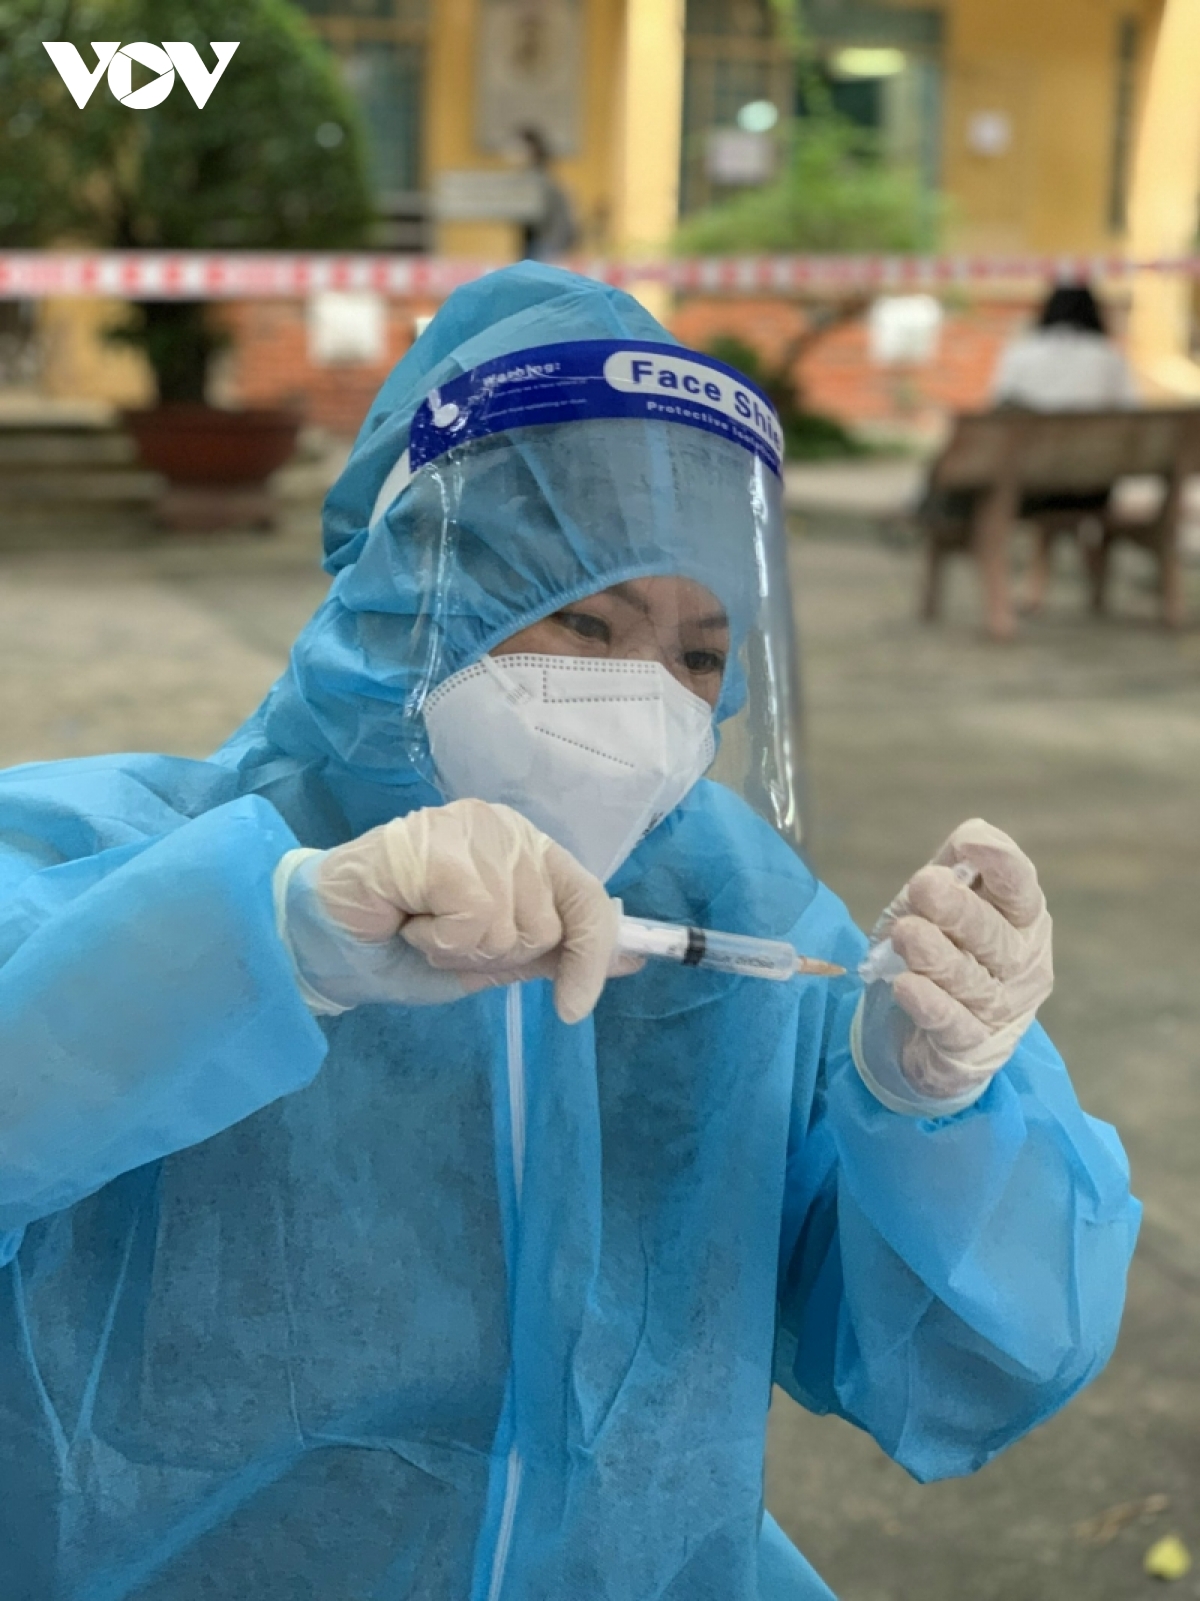 DIỄN BIẾN DỊCH NGÀY 27/1: Hà Nội gần 700 F0 trong tình trạng nặng, nguy kịch, chuyên gia khuyến cáo tránh lây nhiễm trong dịp Tết - Ảnh 1.